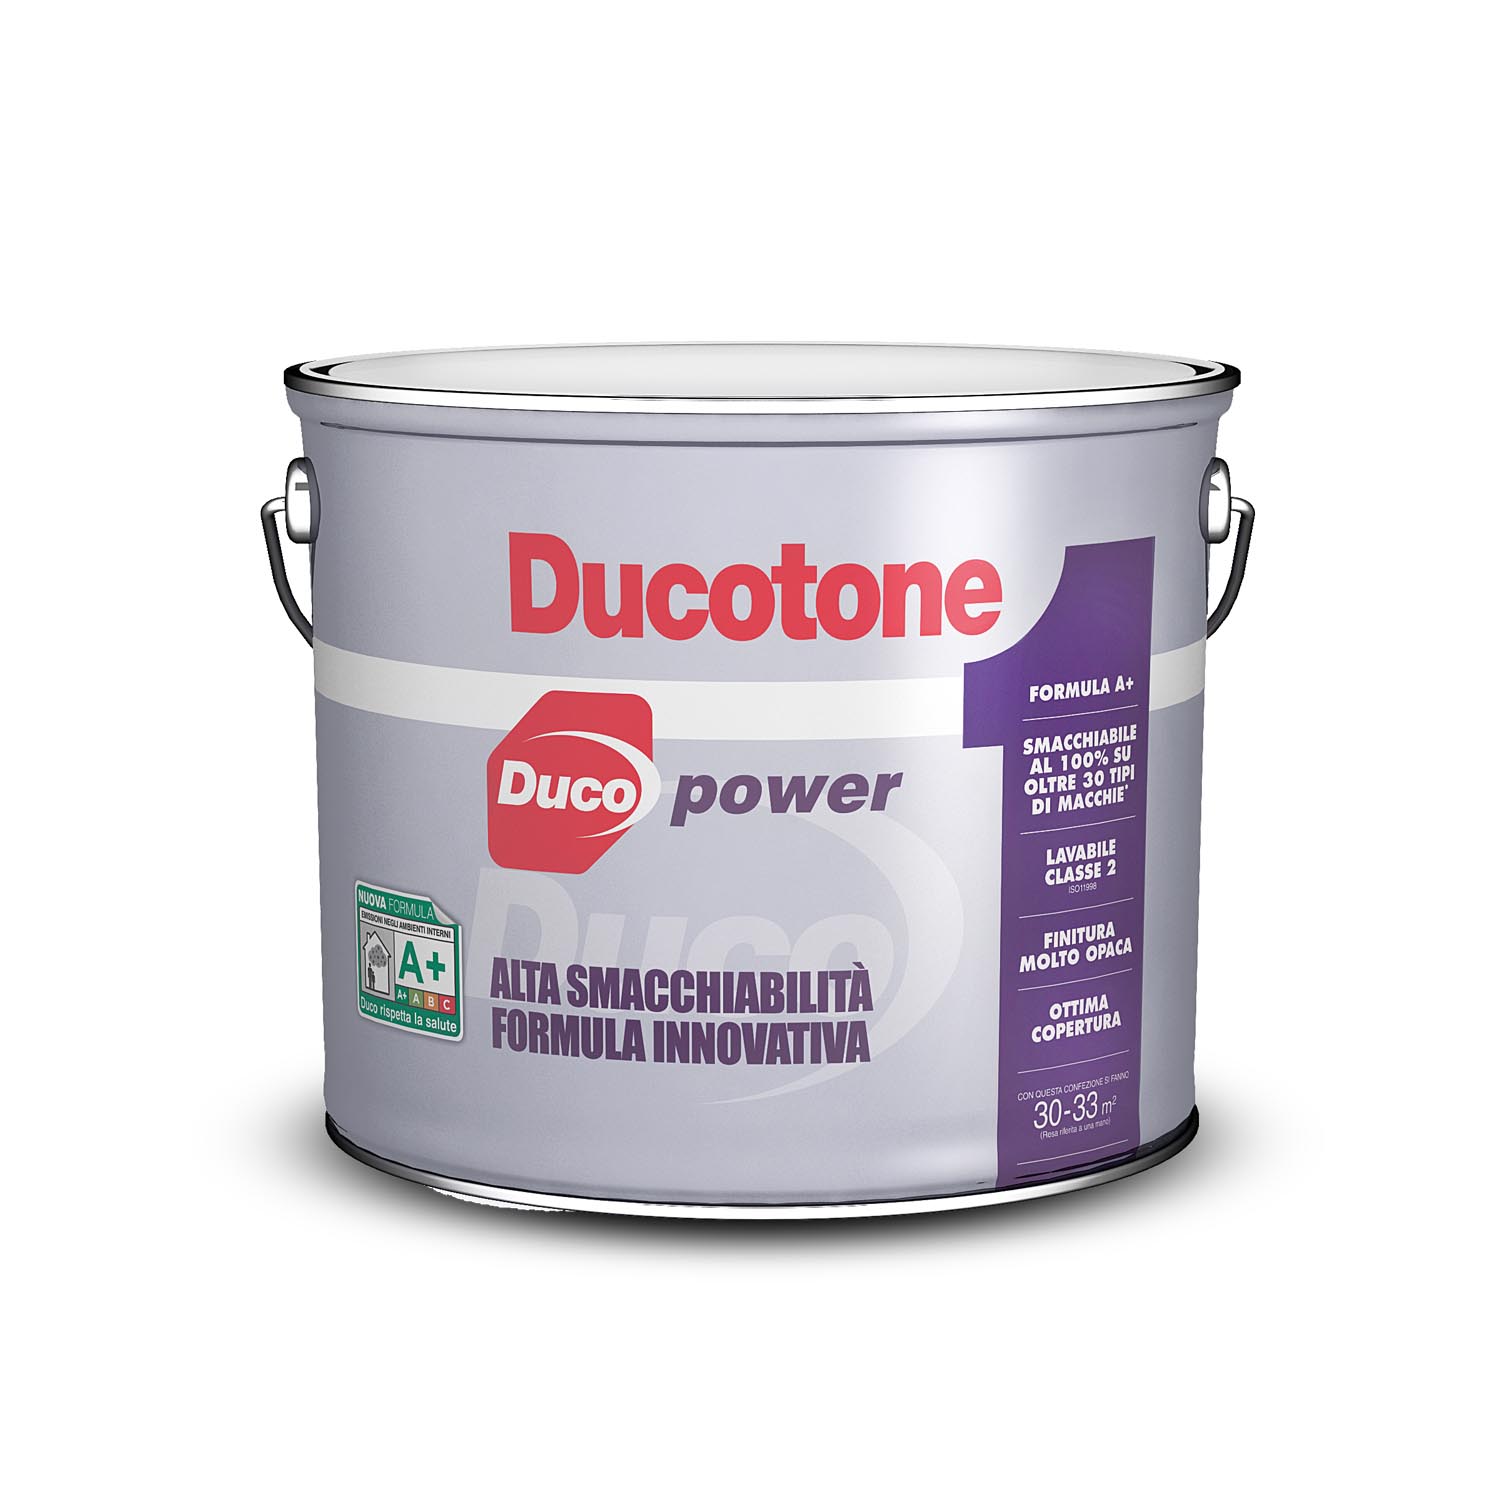 DucotonePower-2,5L